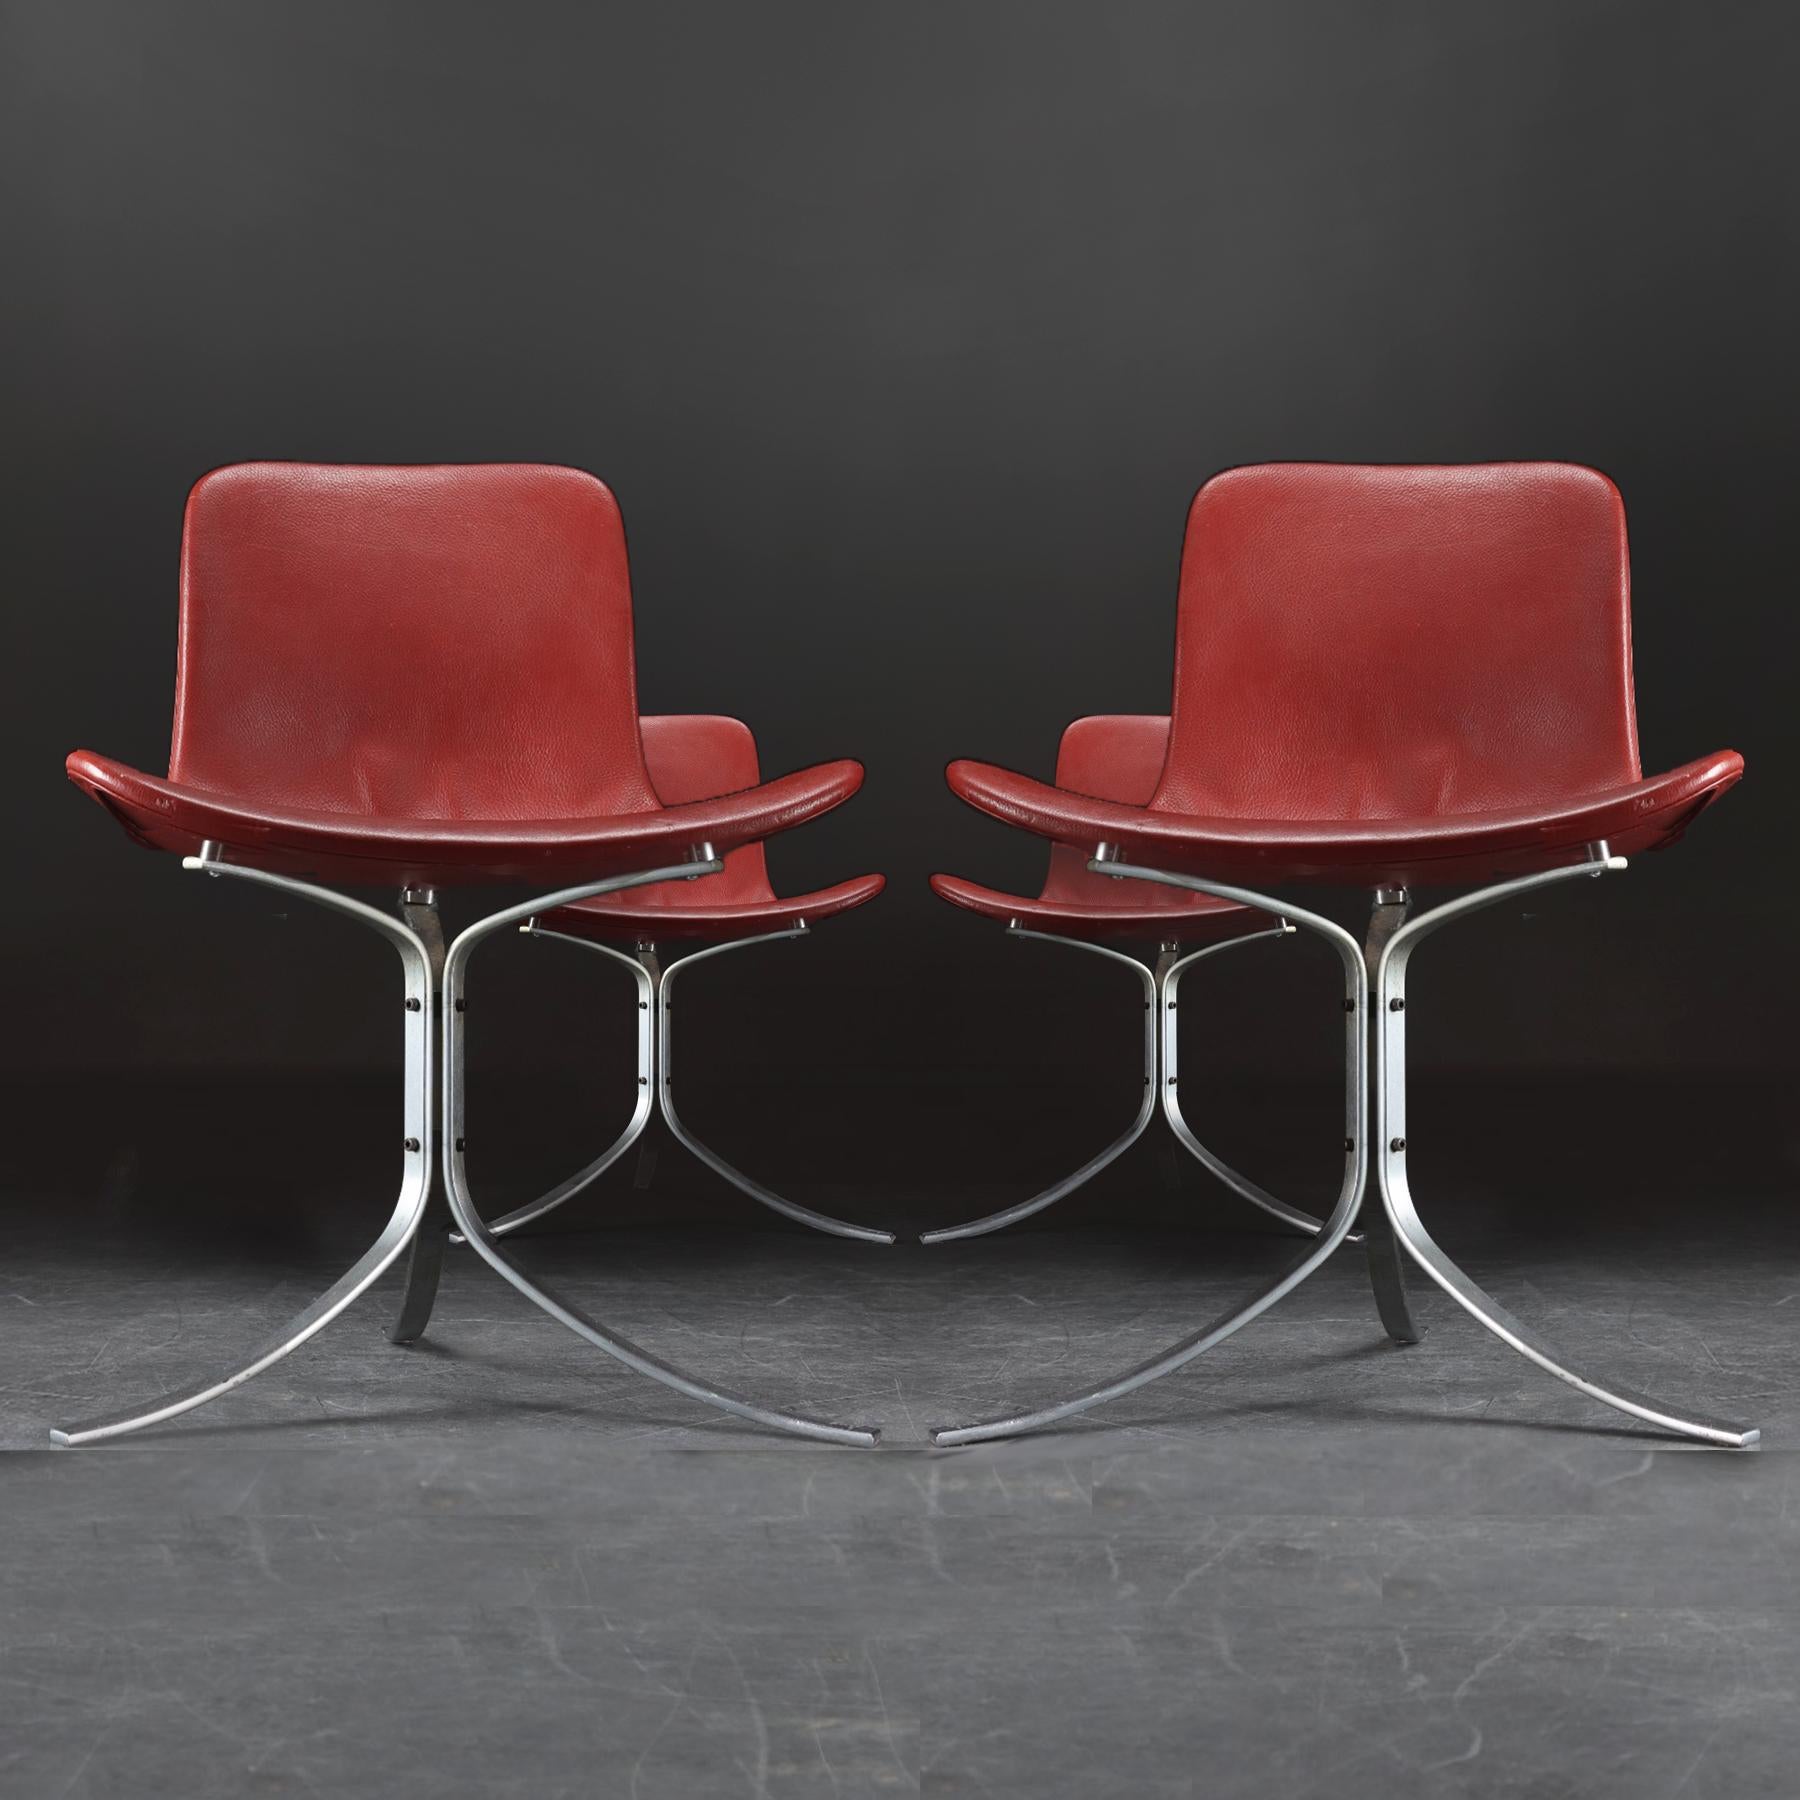 Ein Satz von 4 dänischen Mid Century Vintage Leder und Stahl PK9 Stühlen, entworfen von Poul Kjaerholm für E. Kold Christensen mit zusätzlichen maßgeschneiderten optionalen Sitzhöhenverlängerungen.

Diese wunderschön gefertigten Stühle mit ihrer